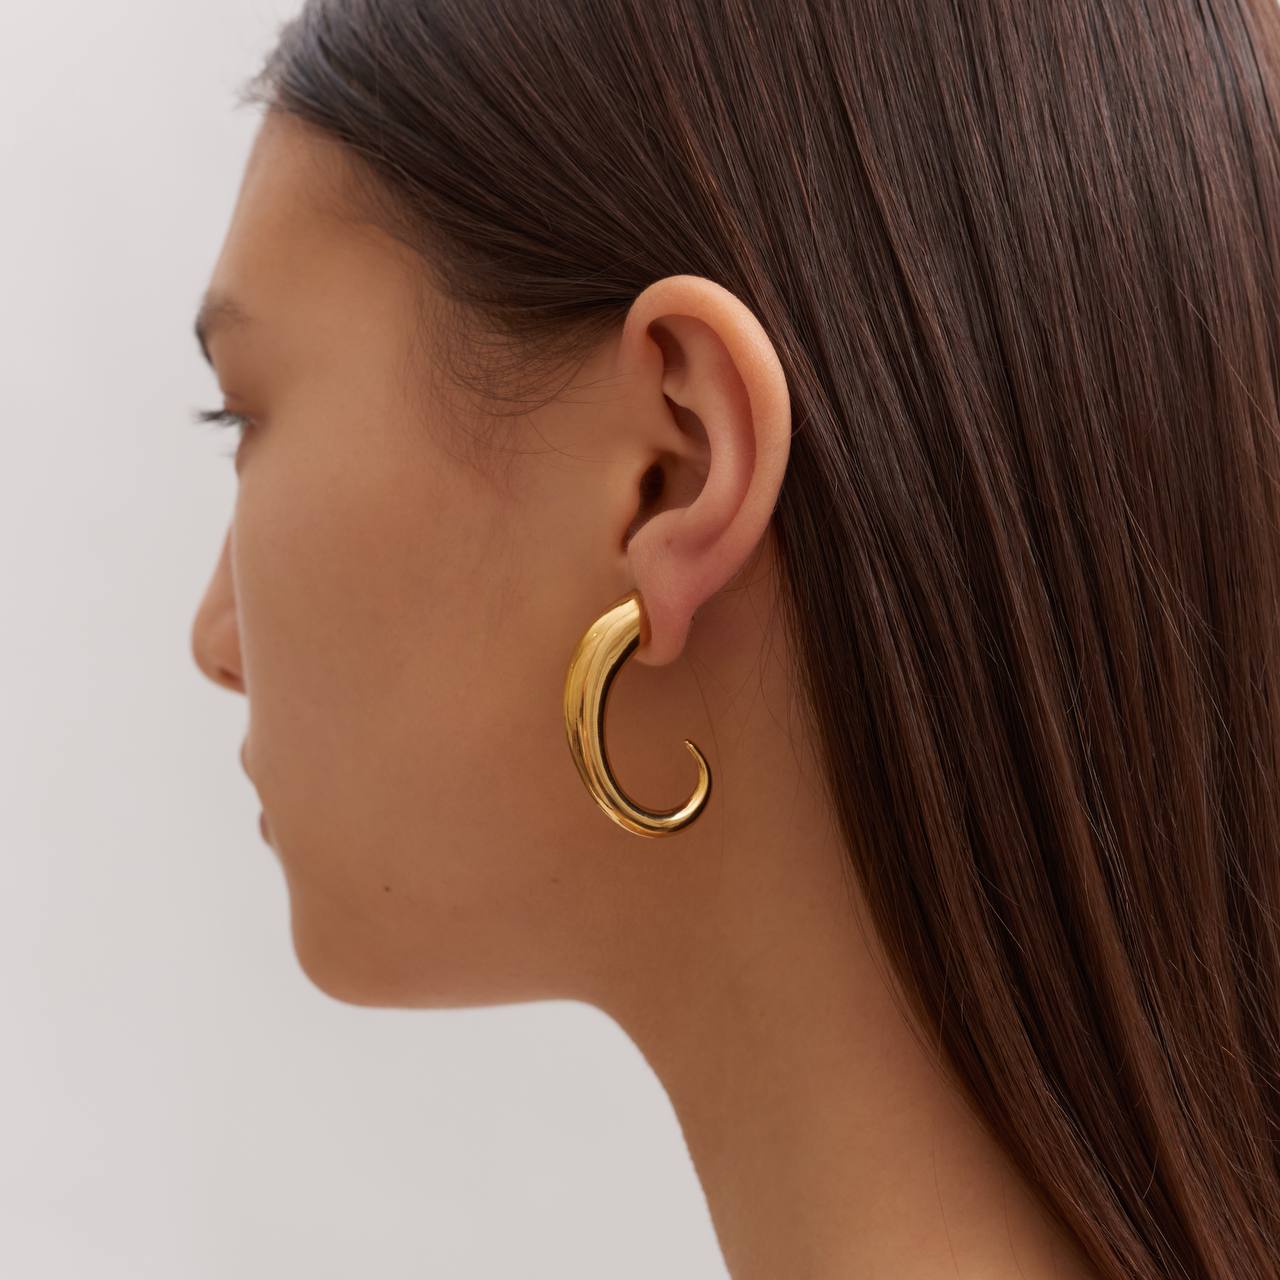 Horn mono earring